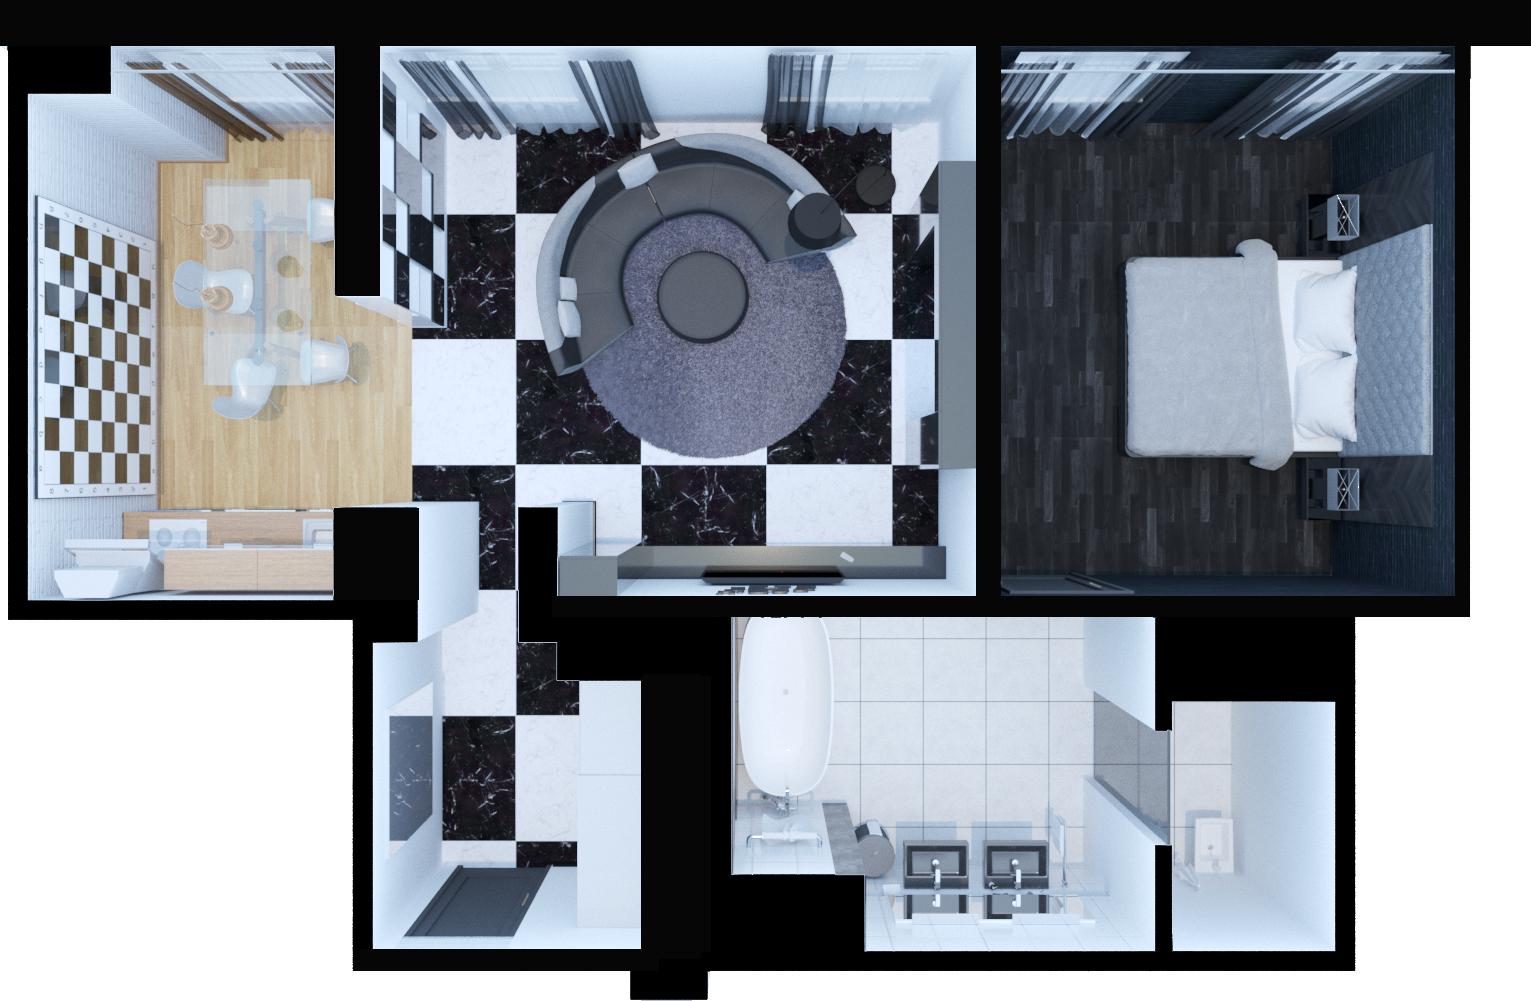 Des chambres design dans l'hôtel. dans 3d max corona render image